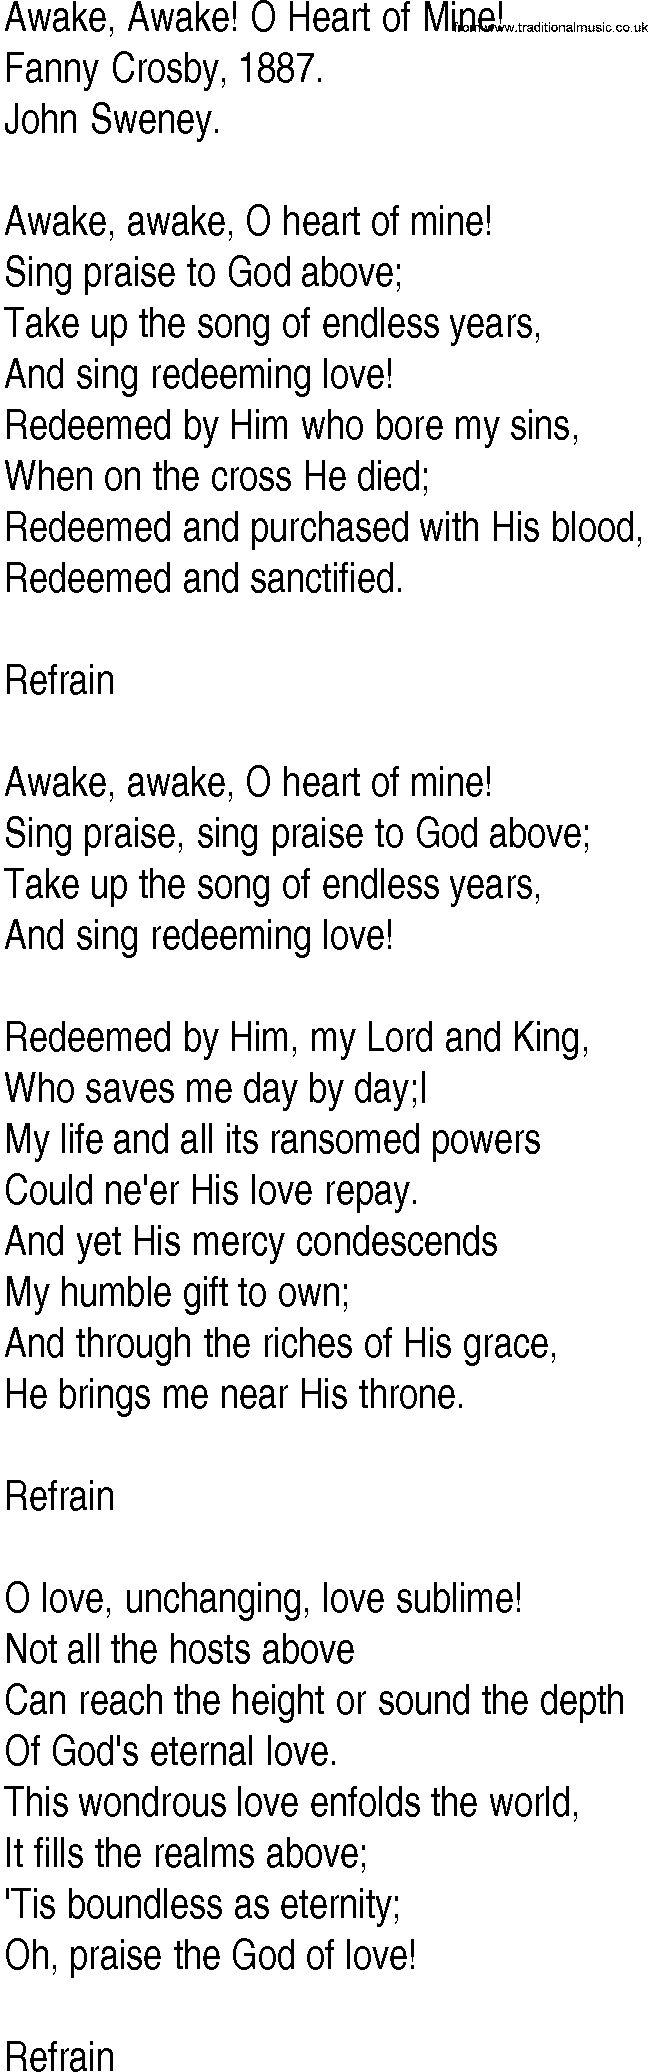 Hymn and Gospel Song: Awake, Awake! O Heart of Mine! by Fanny Crosby lyrics